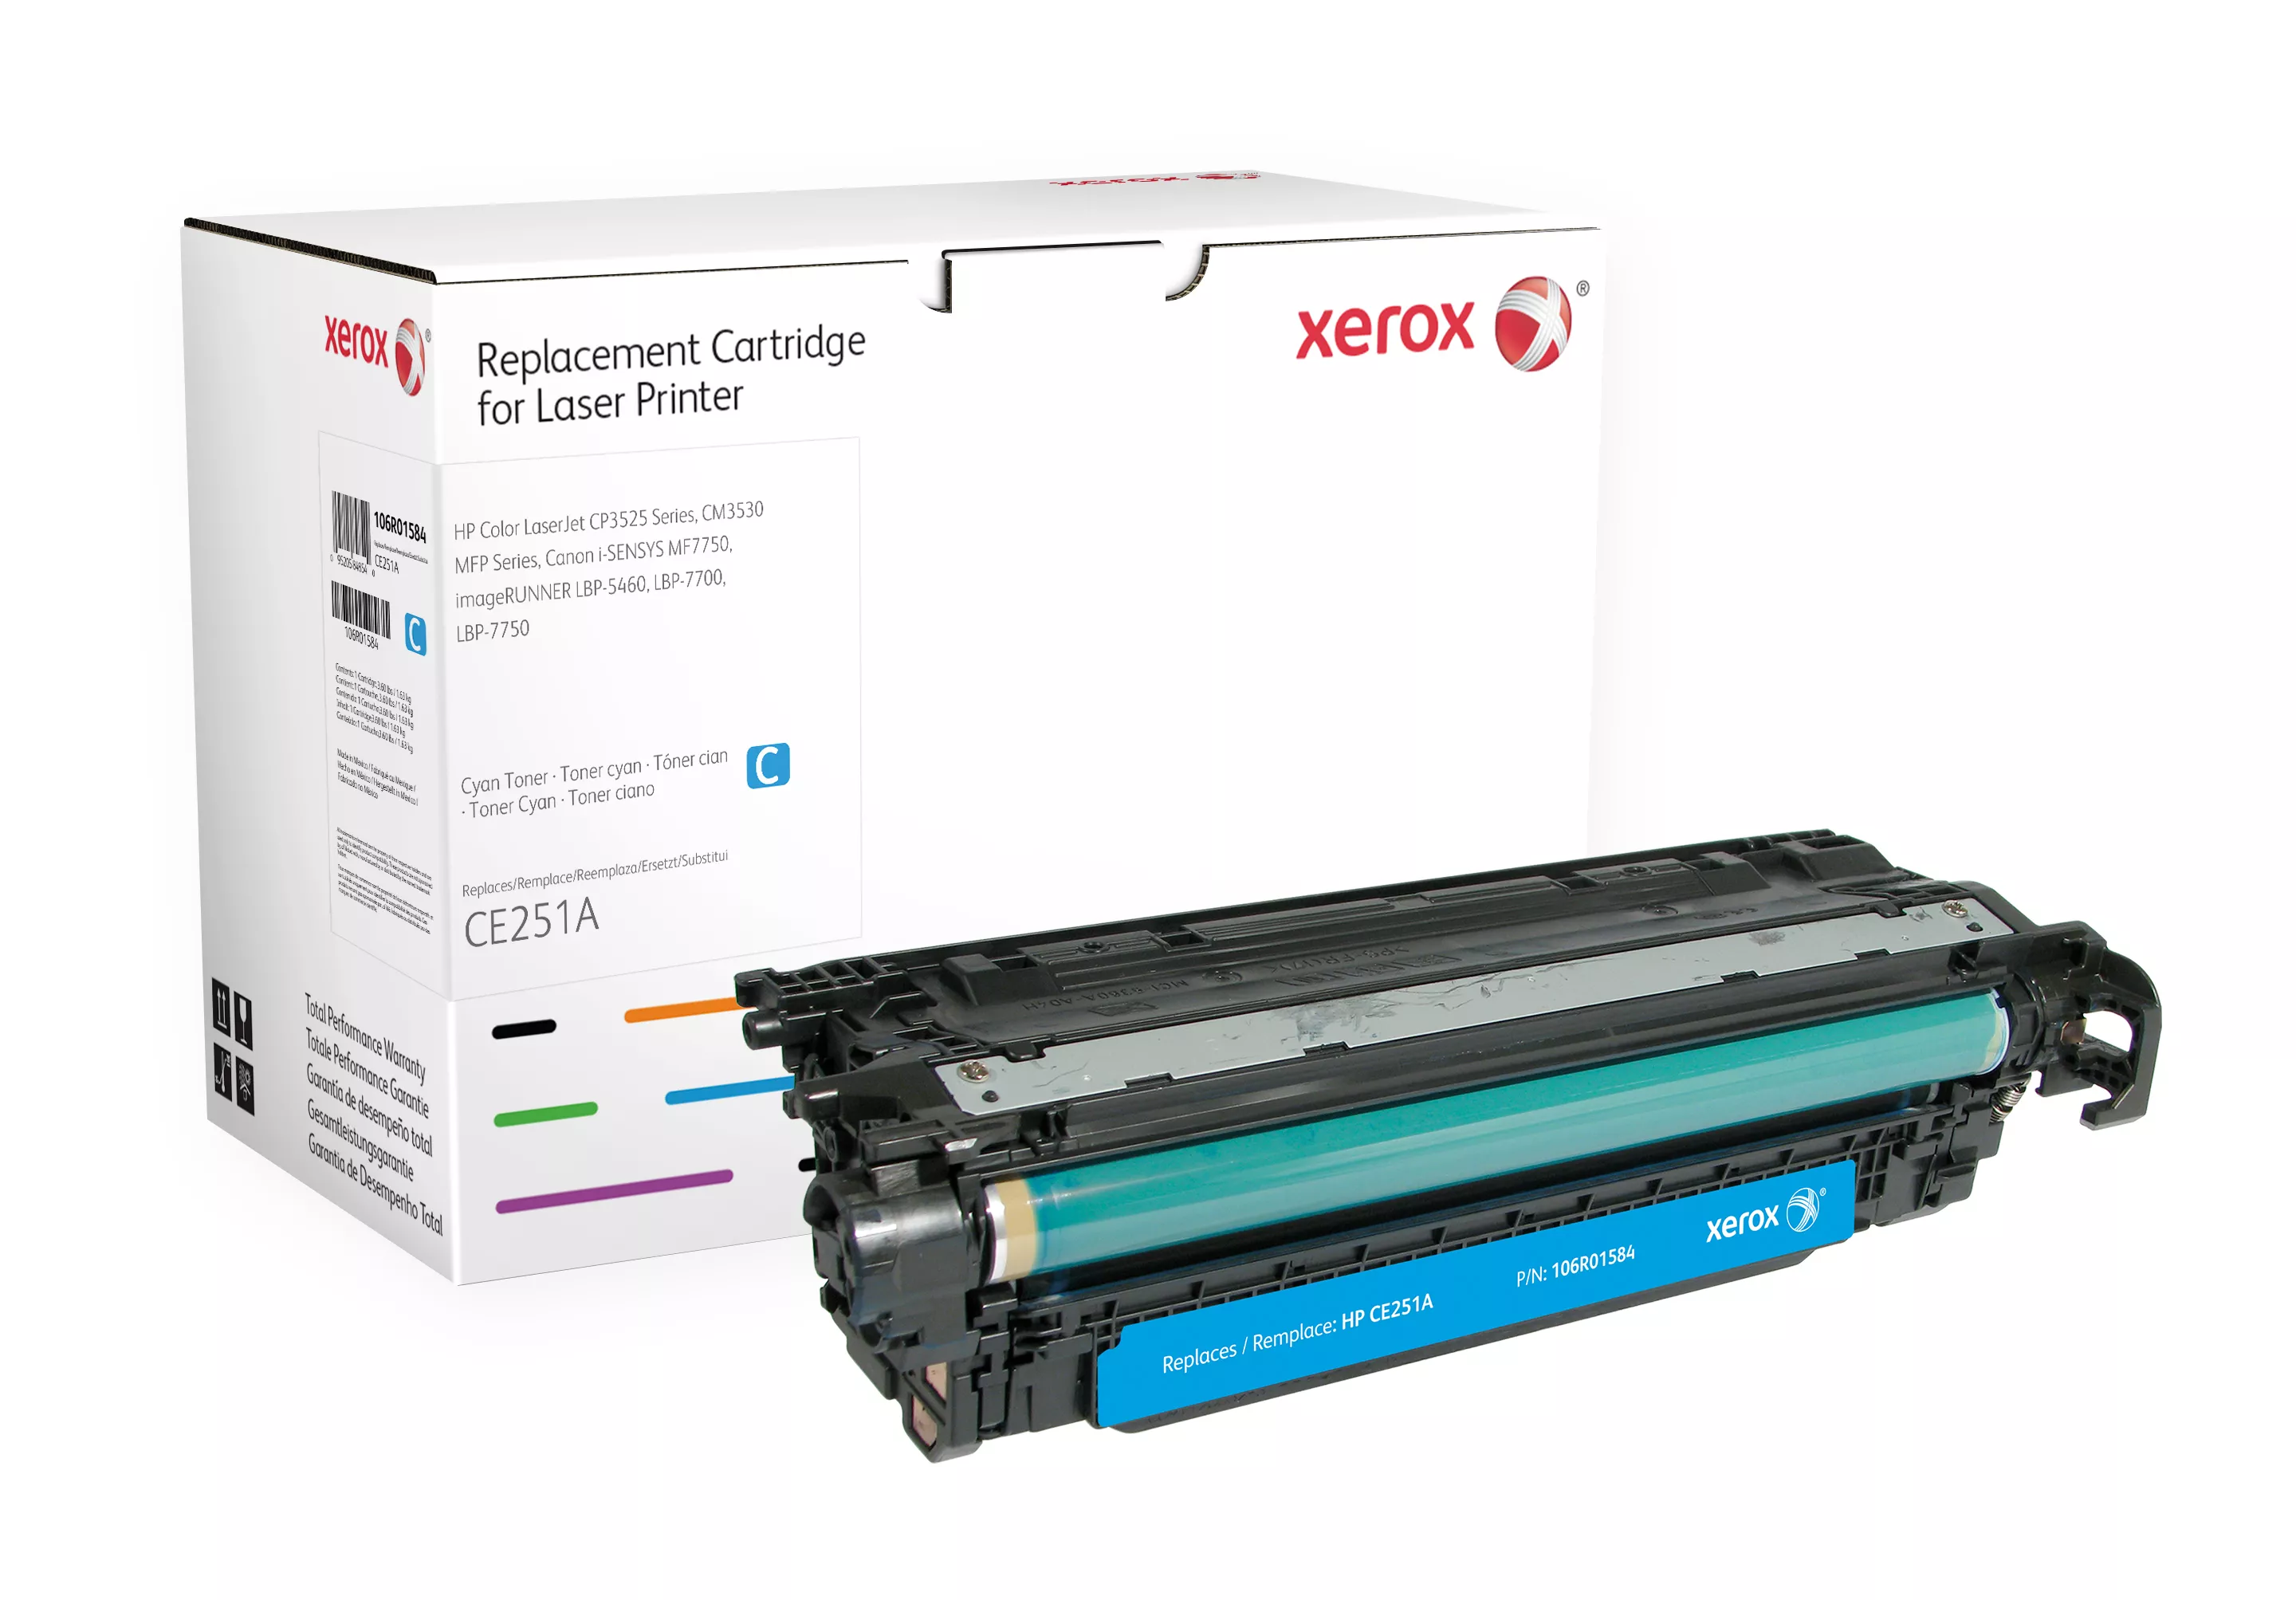 Achat XEROX XRC TONER HP CLJ series CP3525 Cyan CE251A au meilleur prix